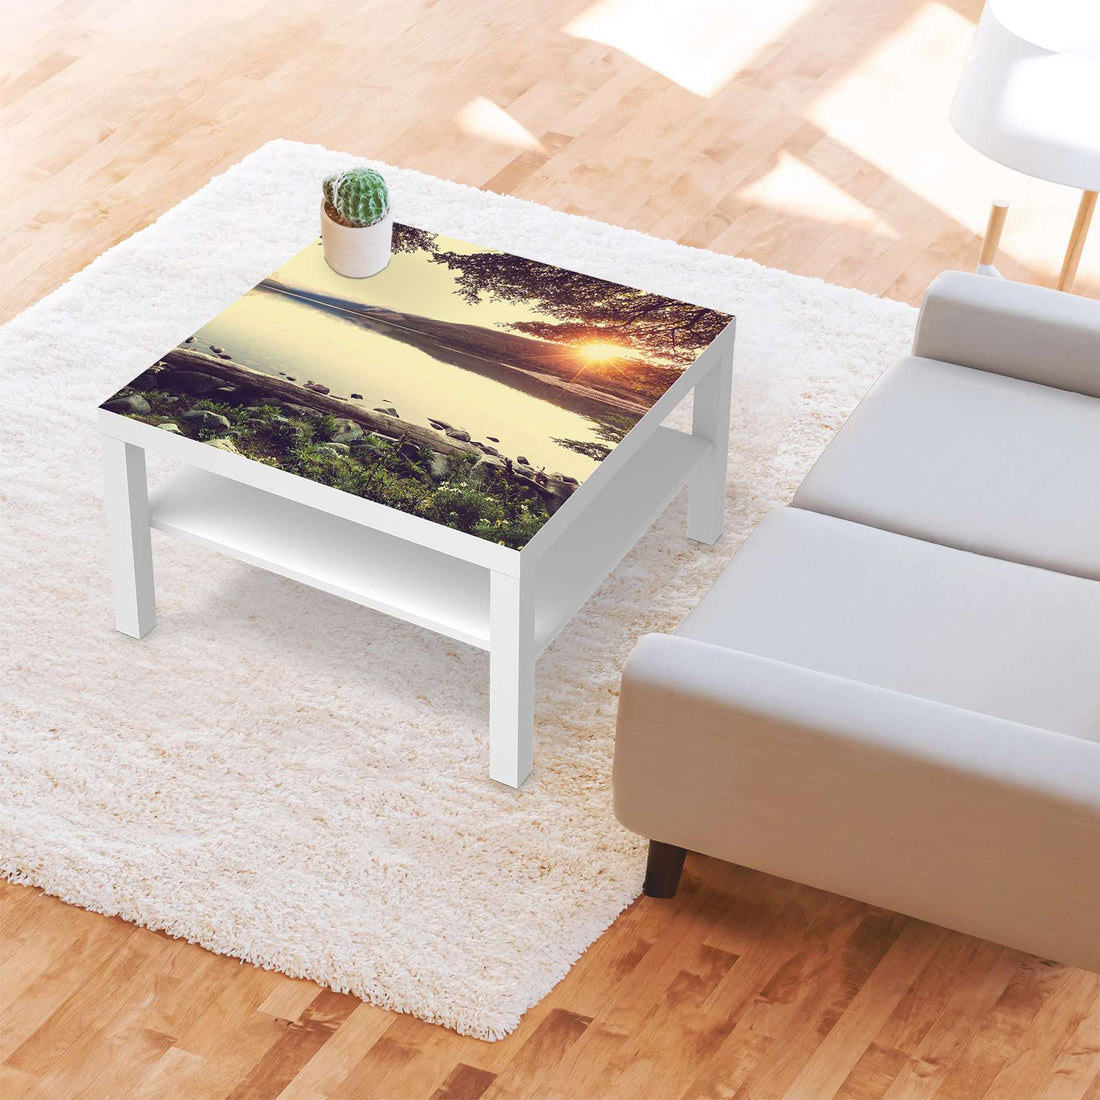 Selbstklebende Folie Seaside Dreams - IKEA Lack Tisch 78x78 cm - Wohnzimmer